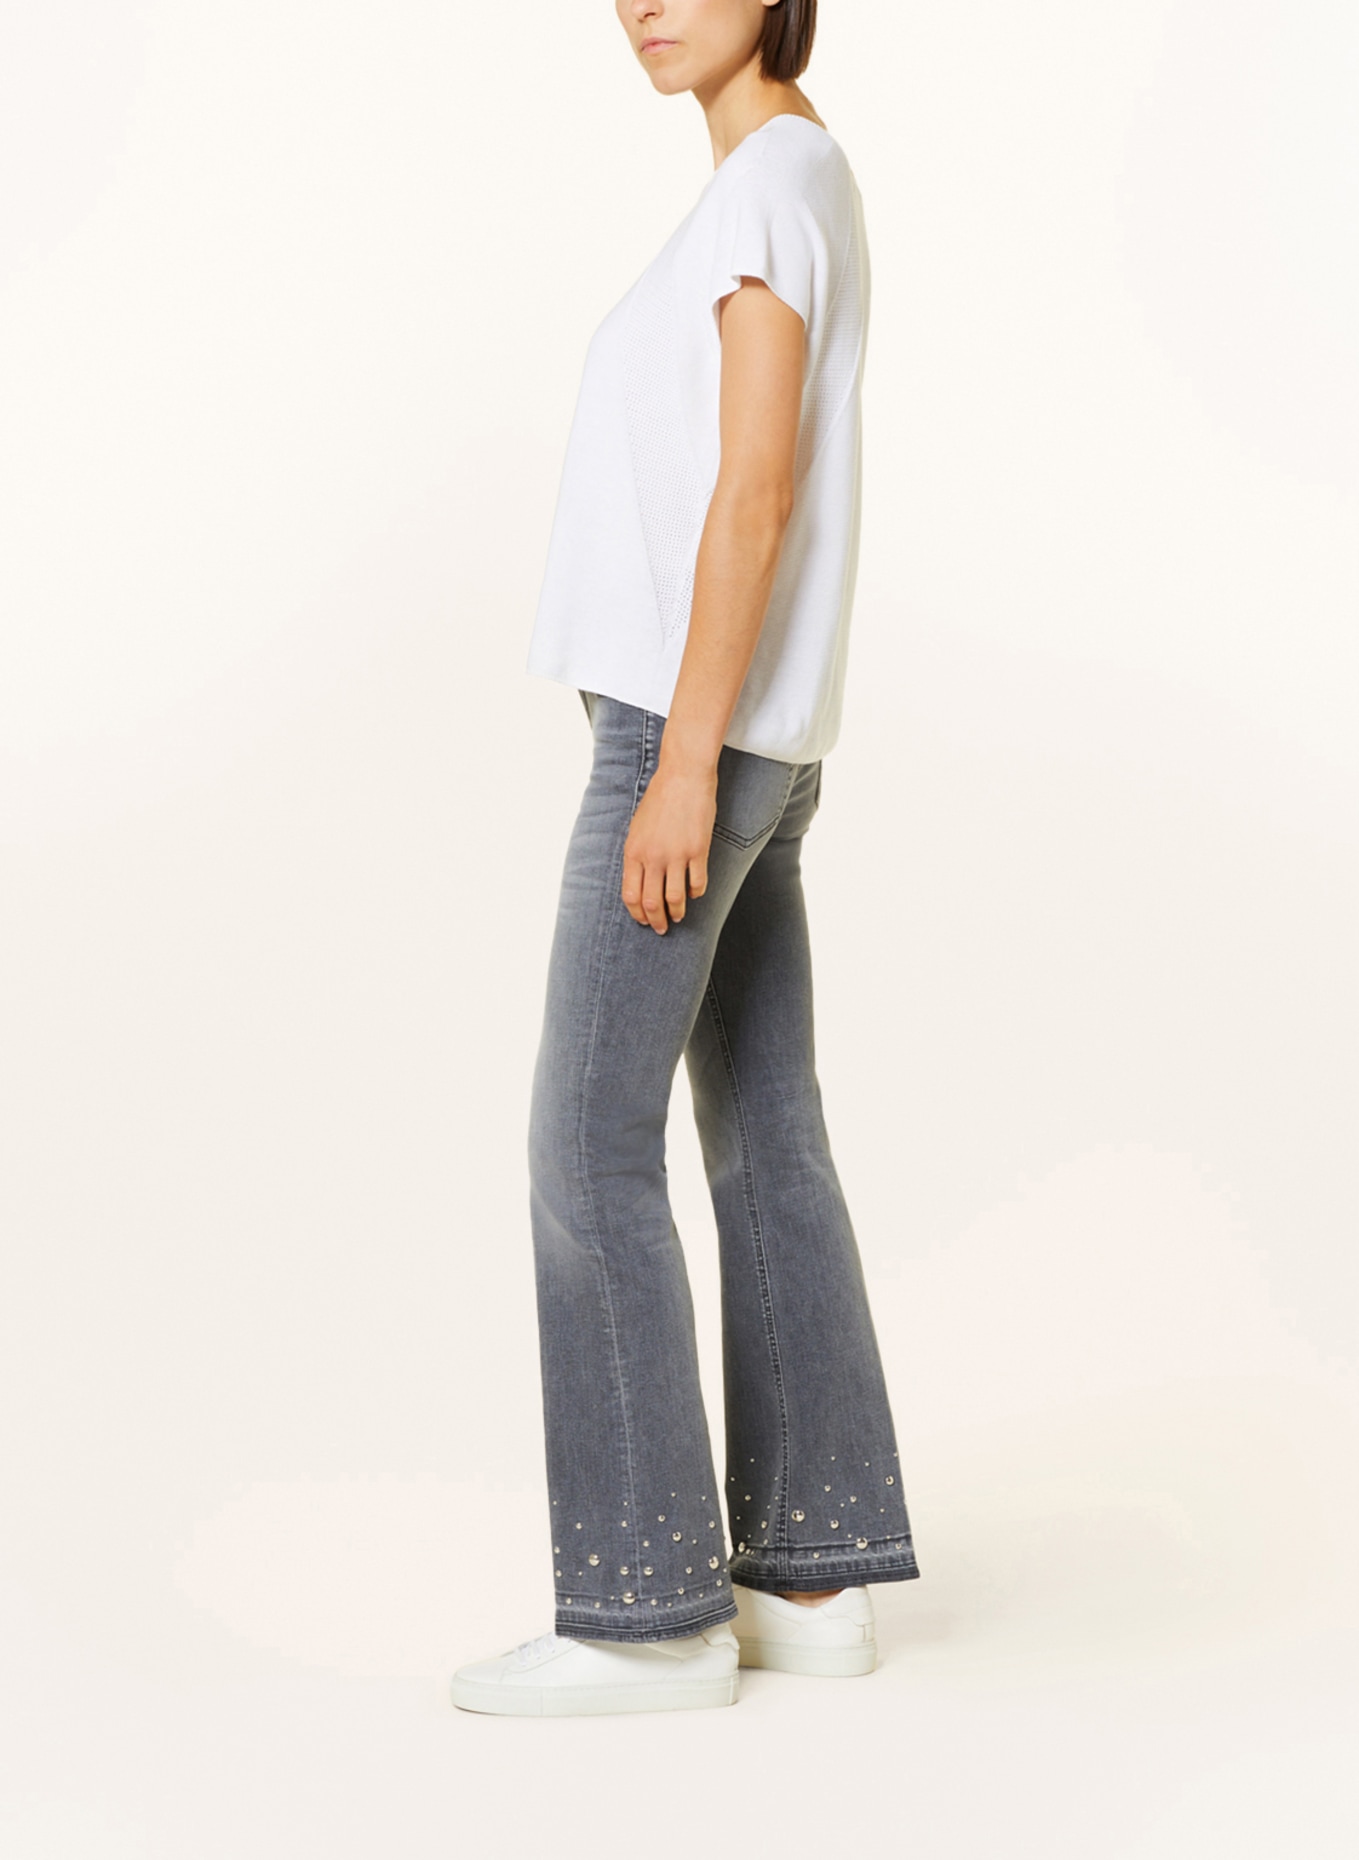 CAMBIO Flared Jeans PARIS mit Nieten, Farbe: 5241 feminin contrast used ope (Bild 4)